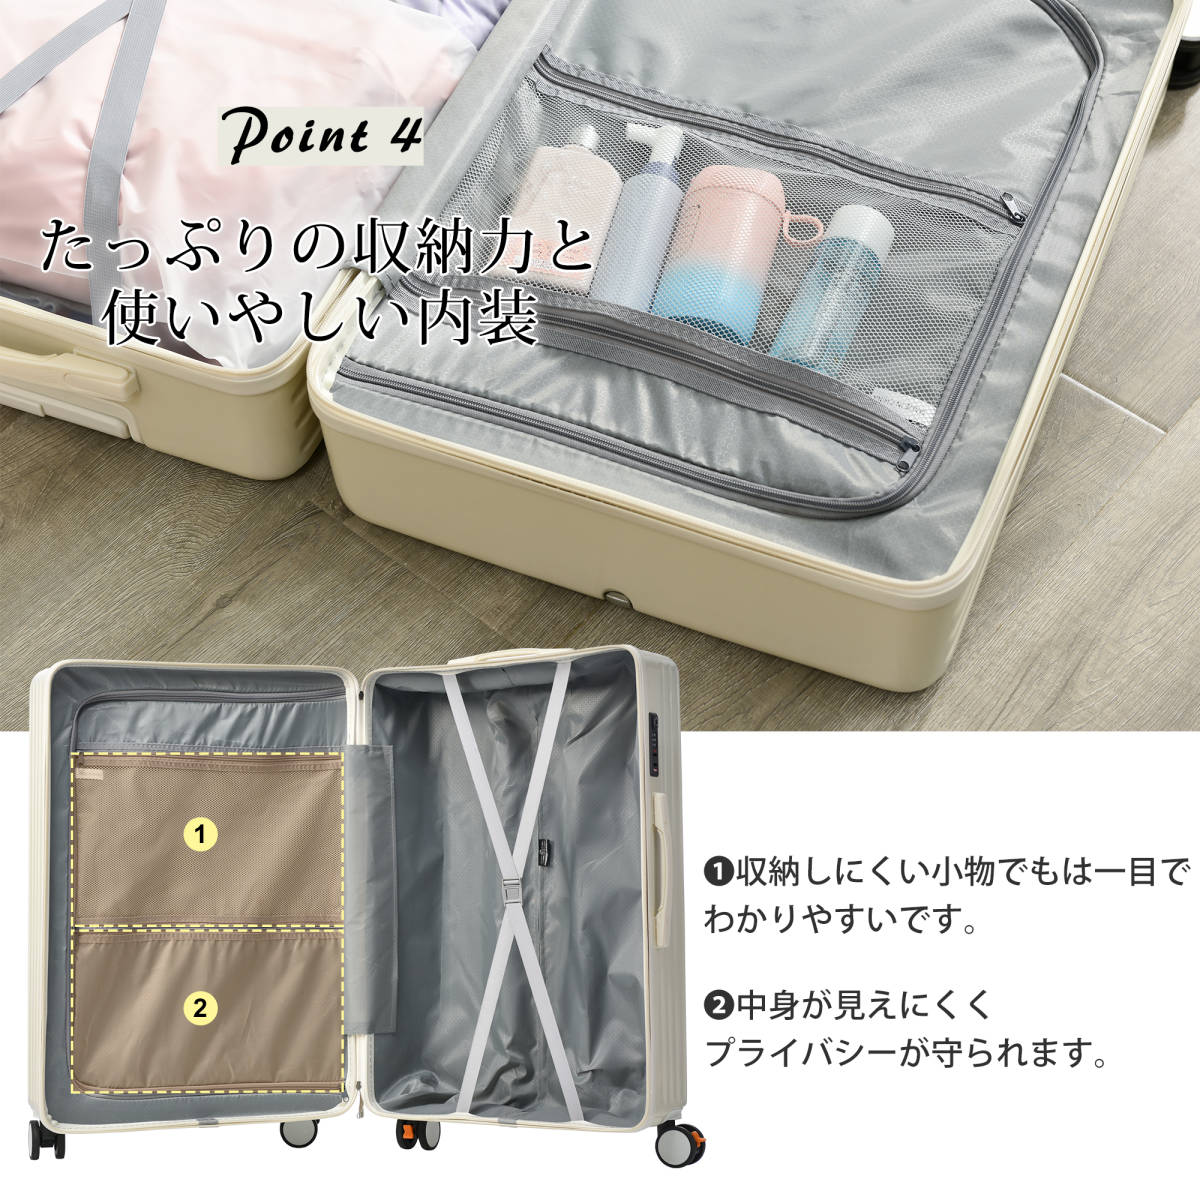 スーツケース Lサイズ 軽量 TSAロック搭載 360度回転 ファスナー式 国際的 おしゃれ 人気色 (L, ブラック)_画像3